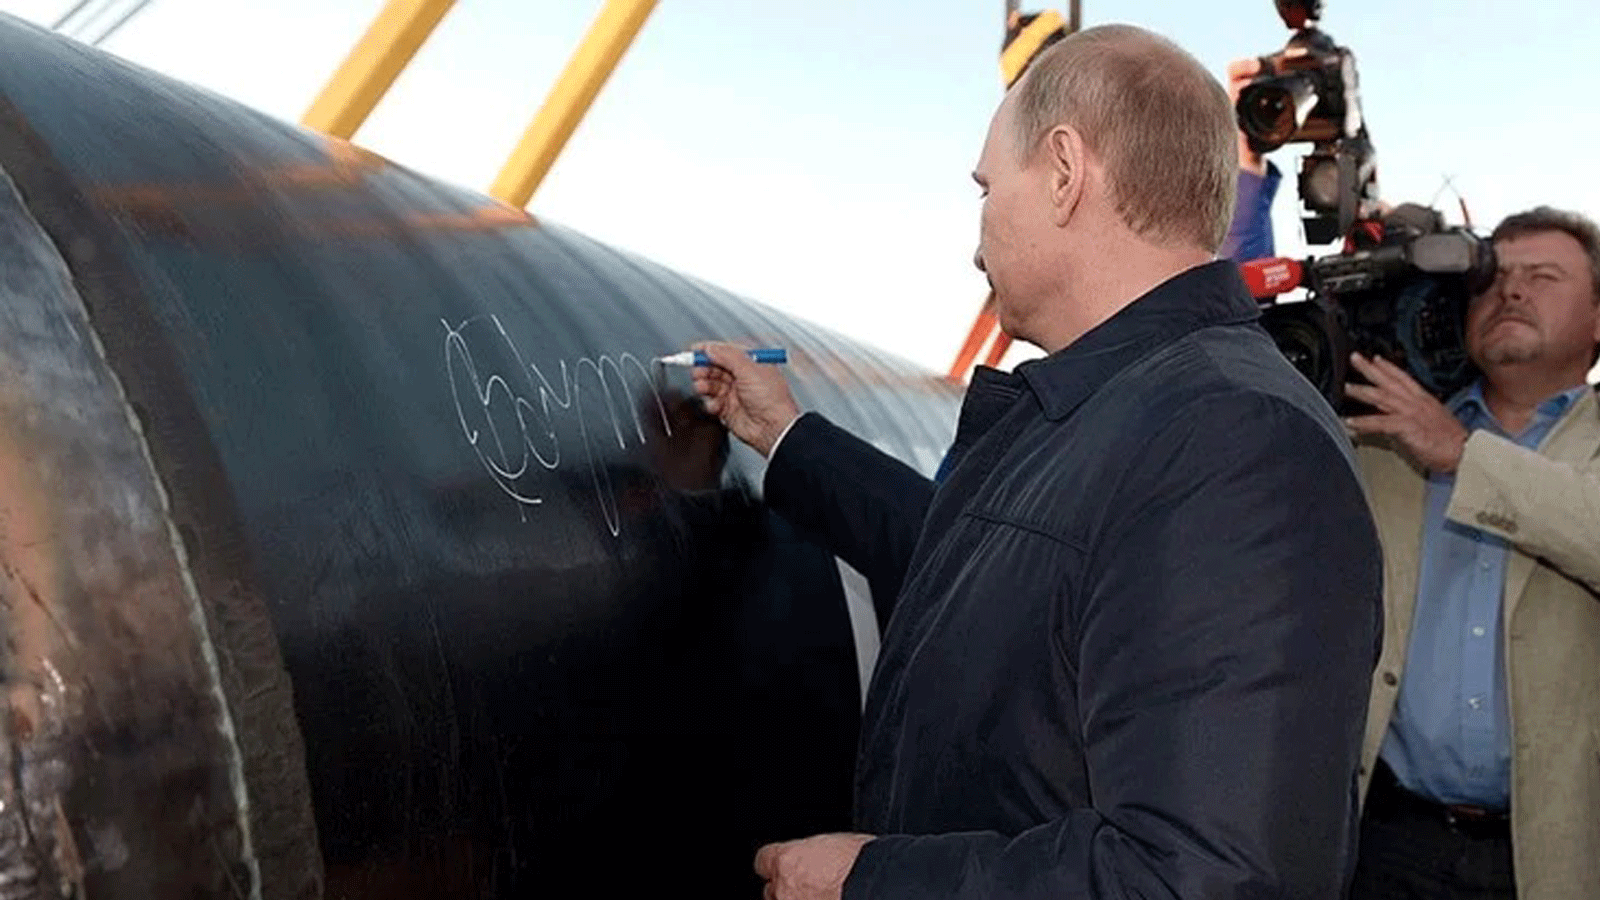  الرئيس الروسي فلاديمير بوتين يفتتح خط أنابيب في روسيا في عام 2014 بعدما تراجعت العلاقات التركمانية الروسية في عام 2009 خلال نزاع على الأسعار